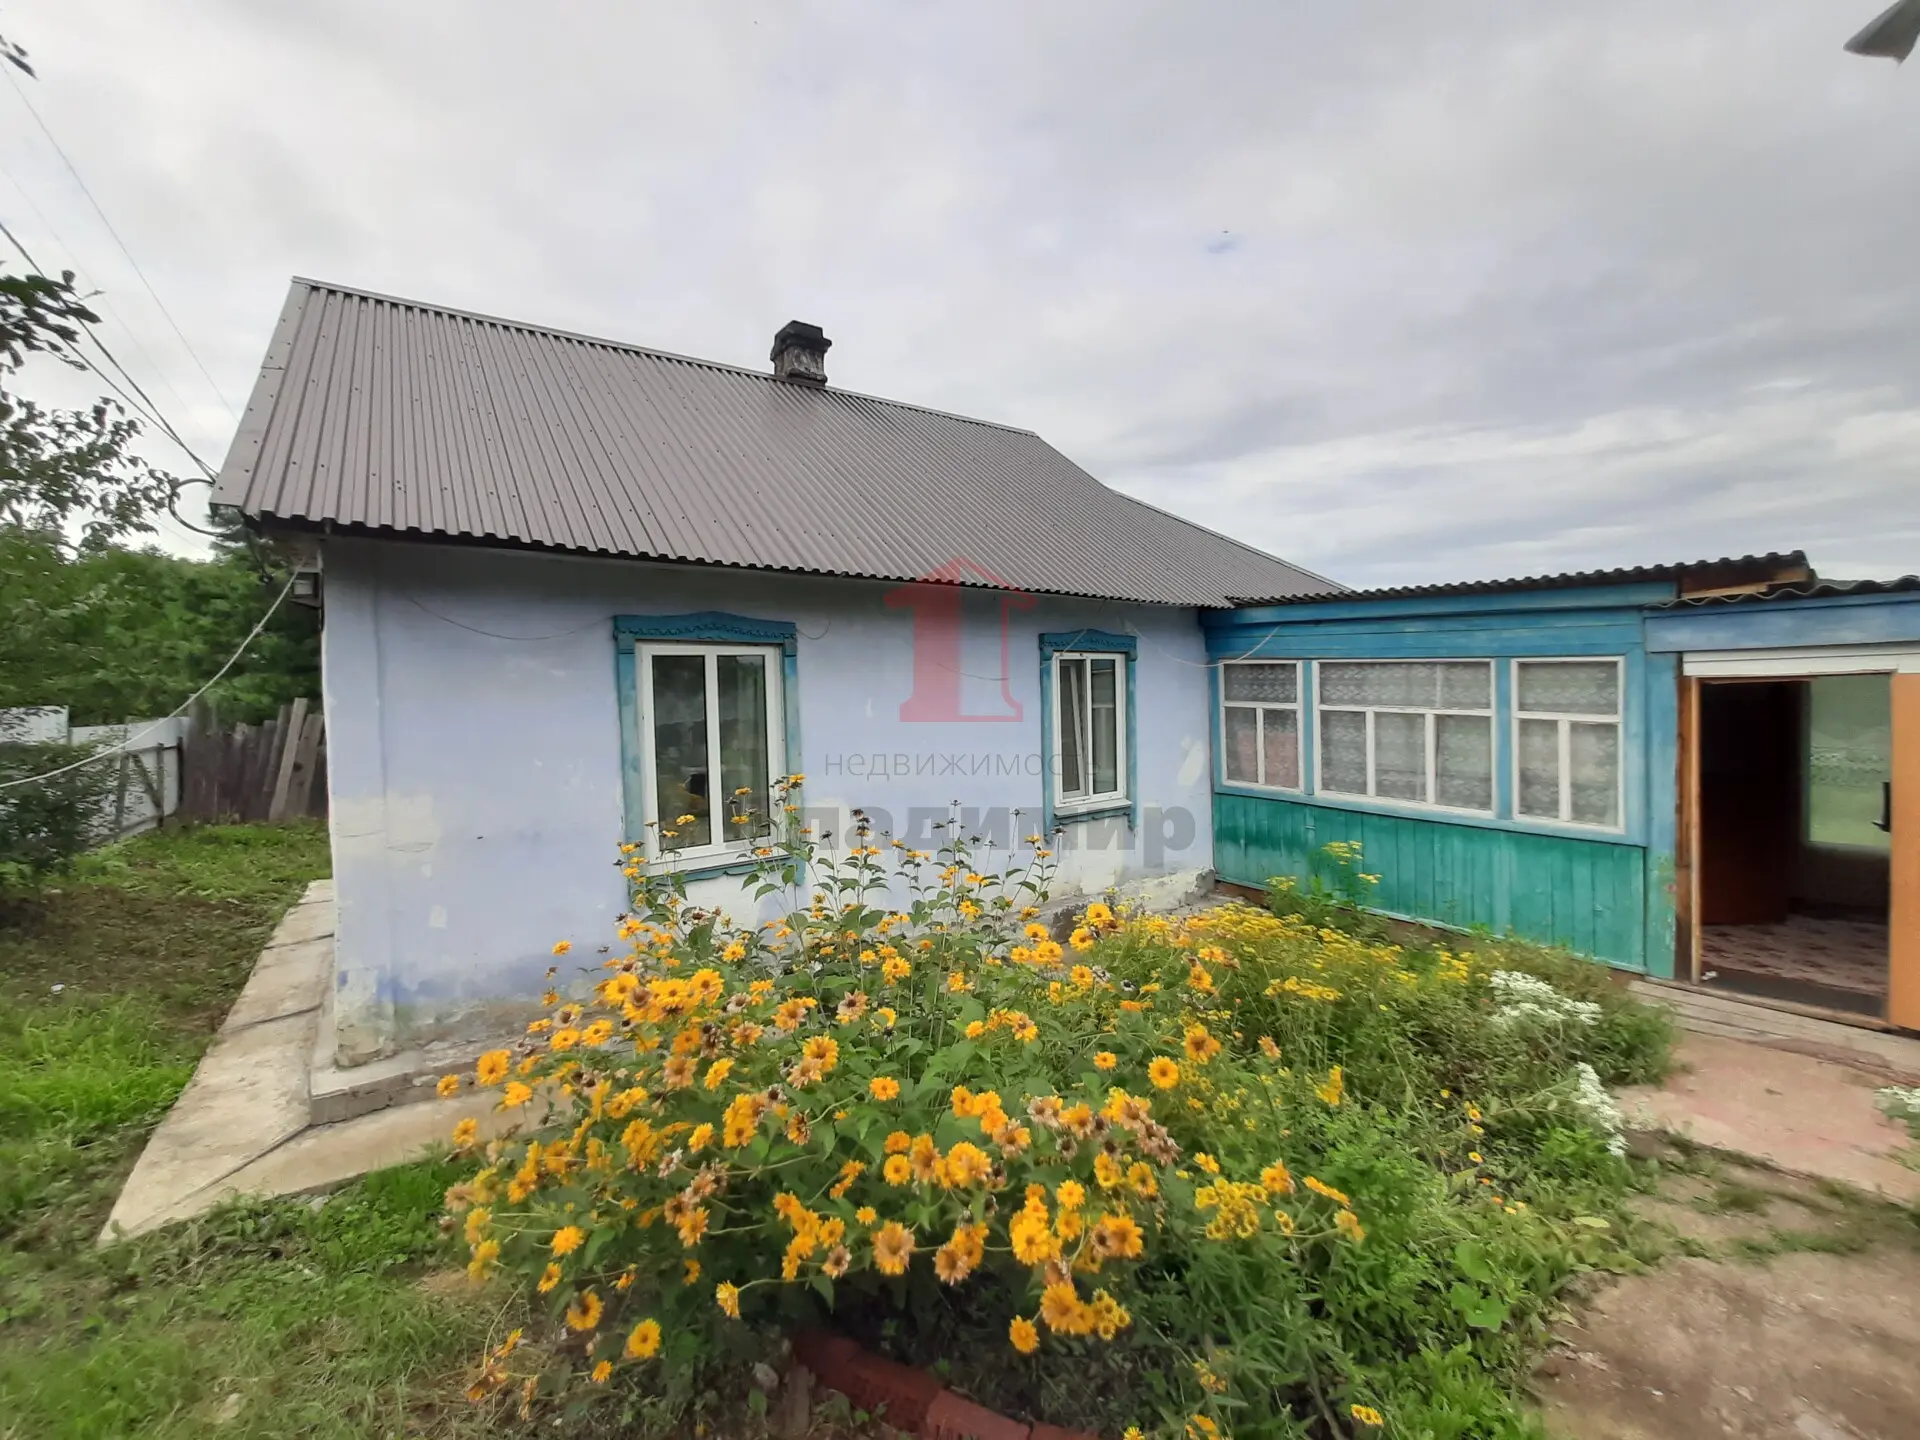 Купить дом в партизанске приморском крае